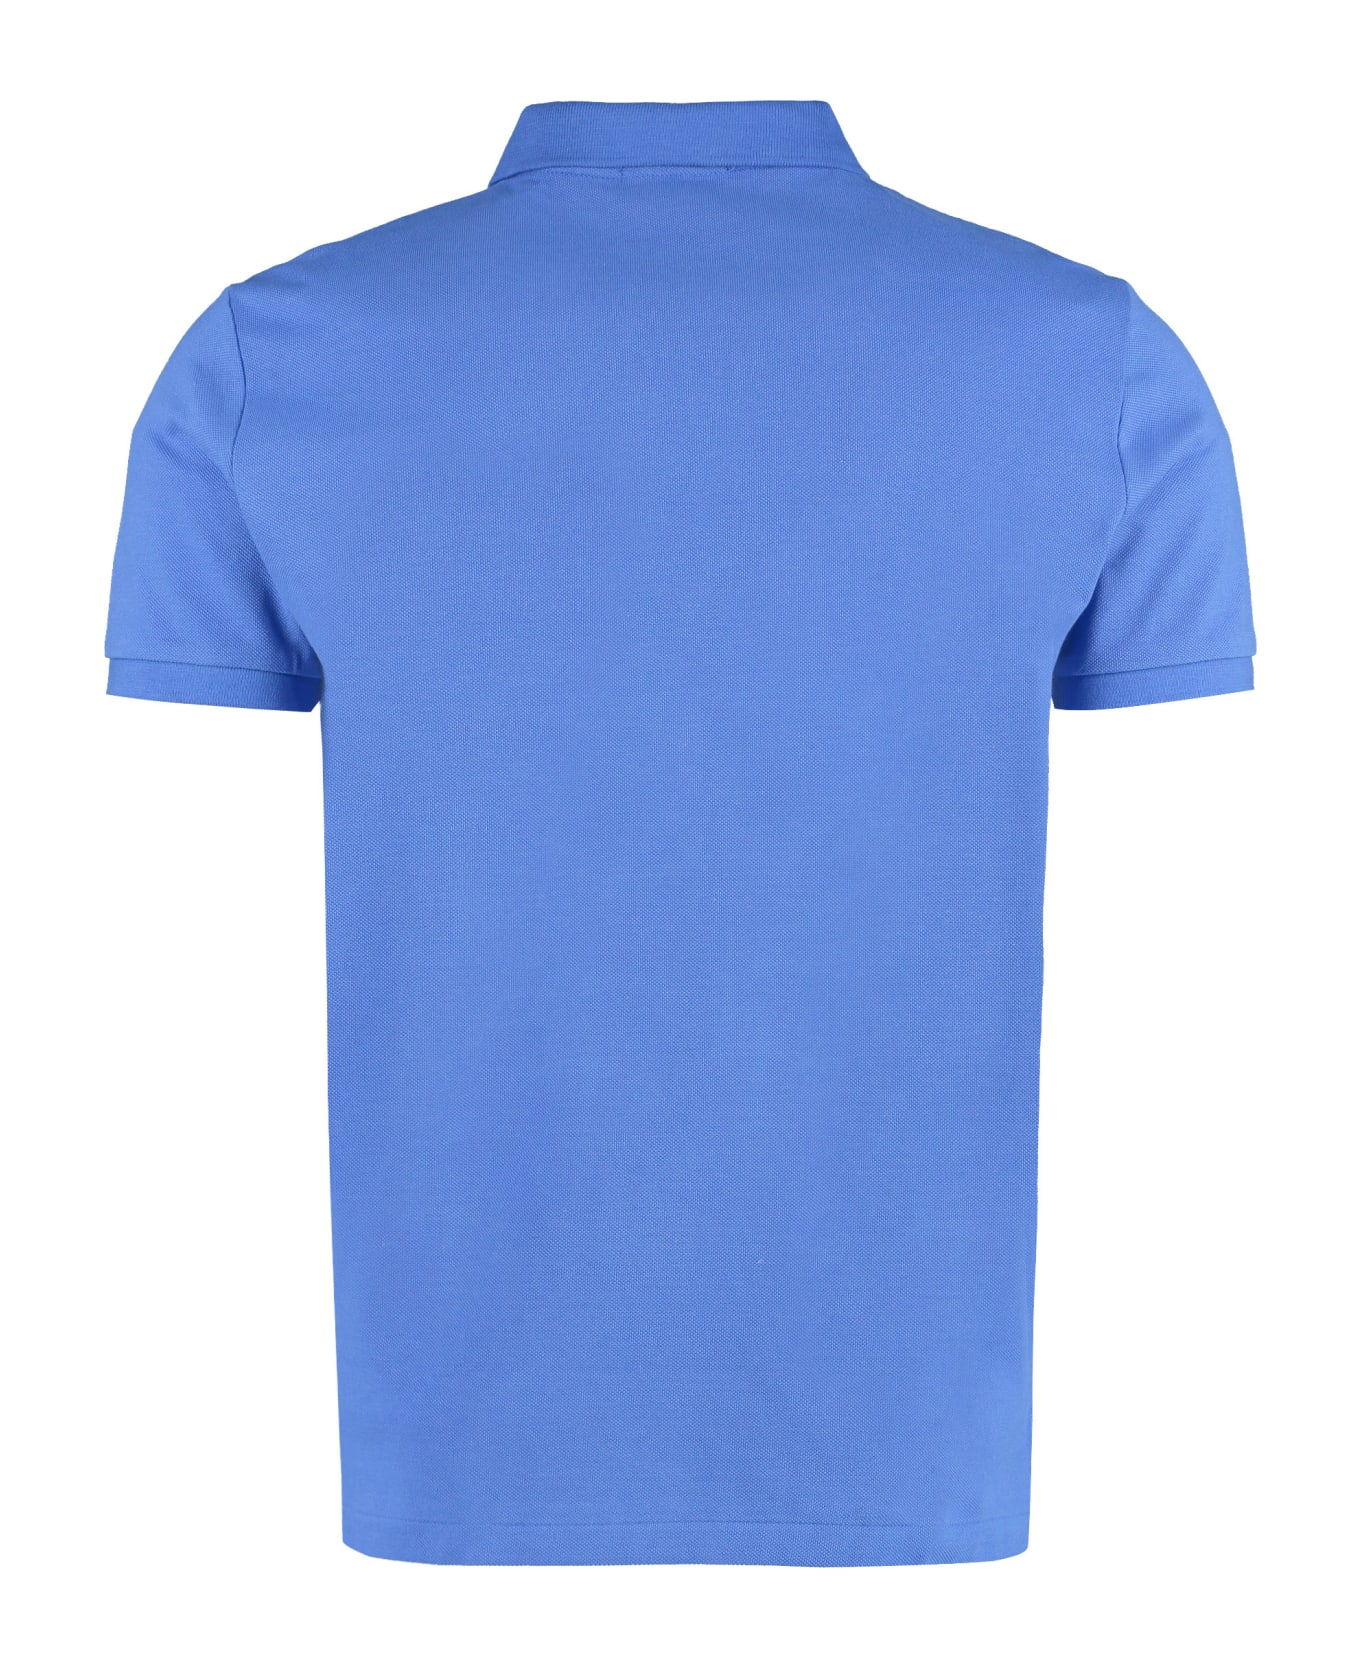 Ralph Lauren Short Sleeve Cotton Polo Shirt - New Iris Blue